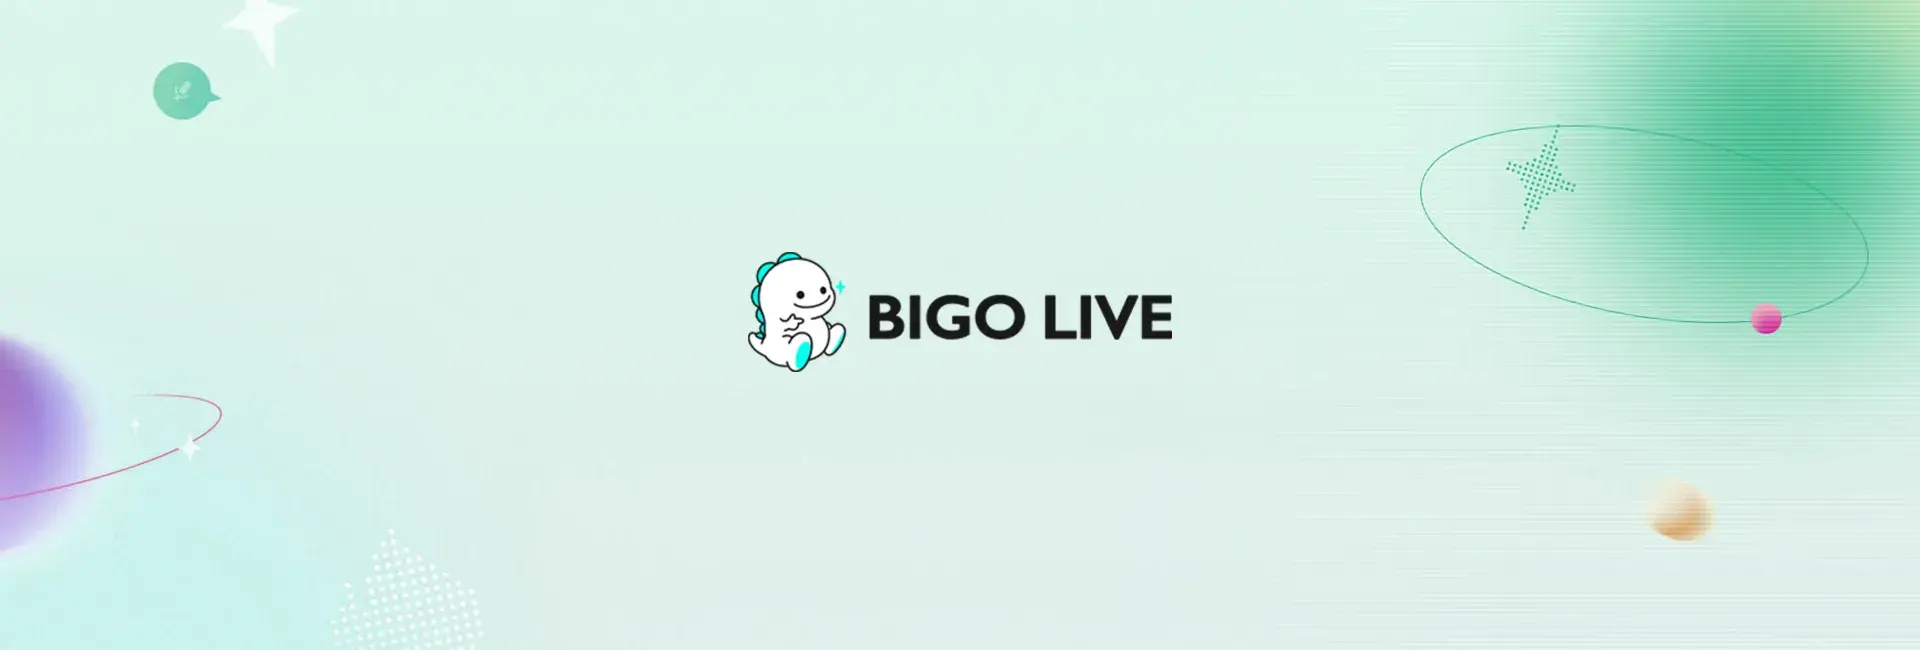 Bigo Live - 117 Diamonds (Global)	